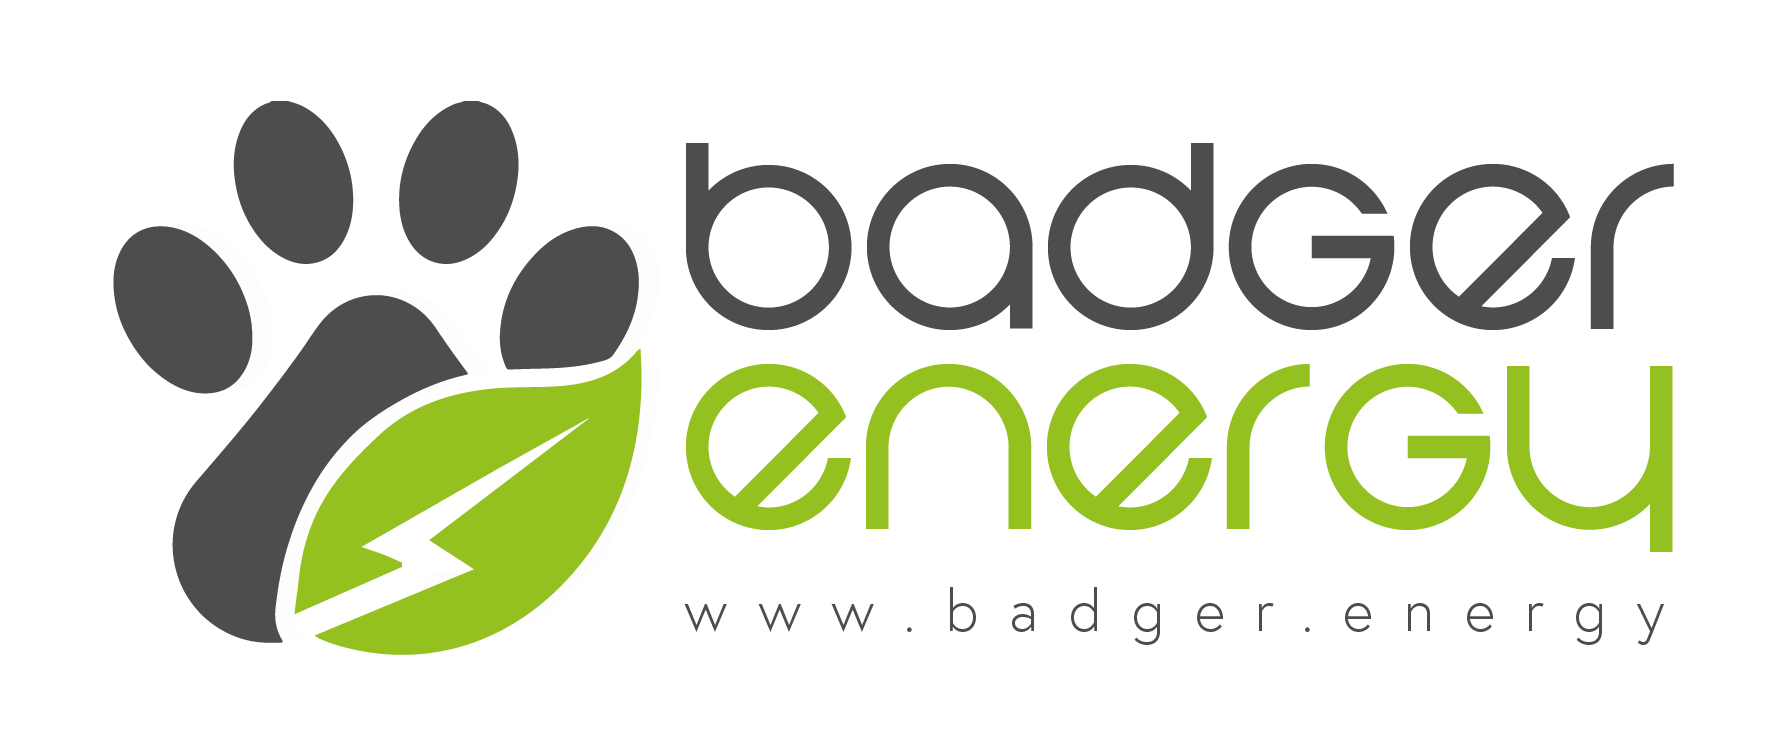 Badger Energy Logo august 2021 FINAL DRAFT-03 (005) (002)